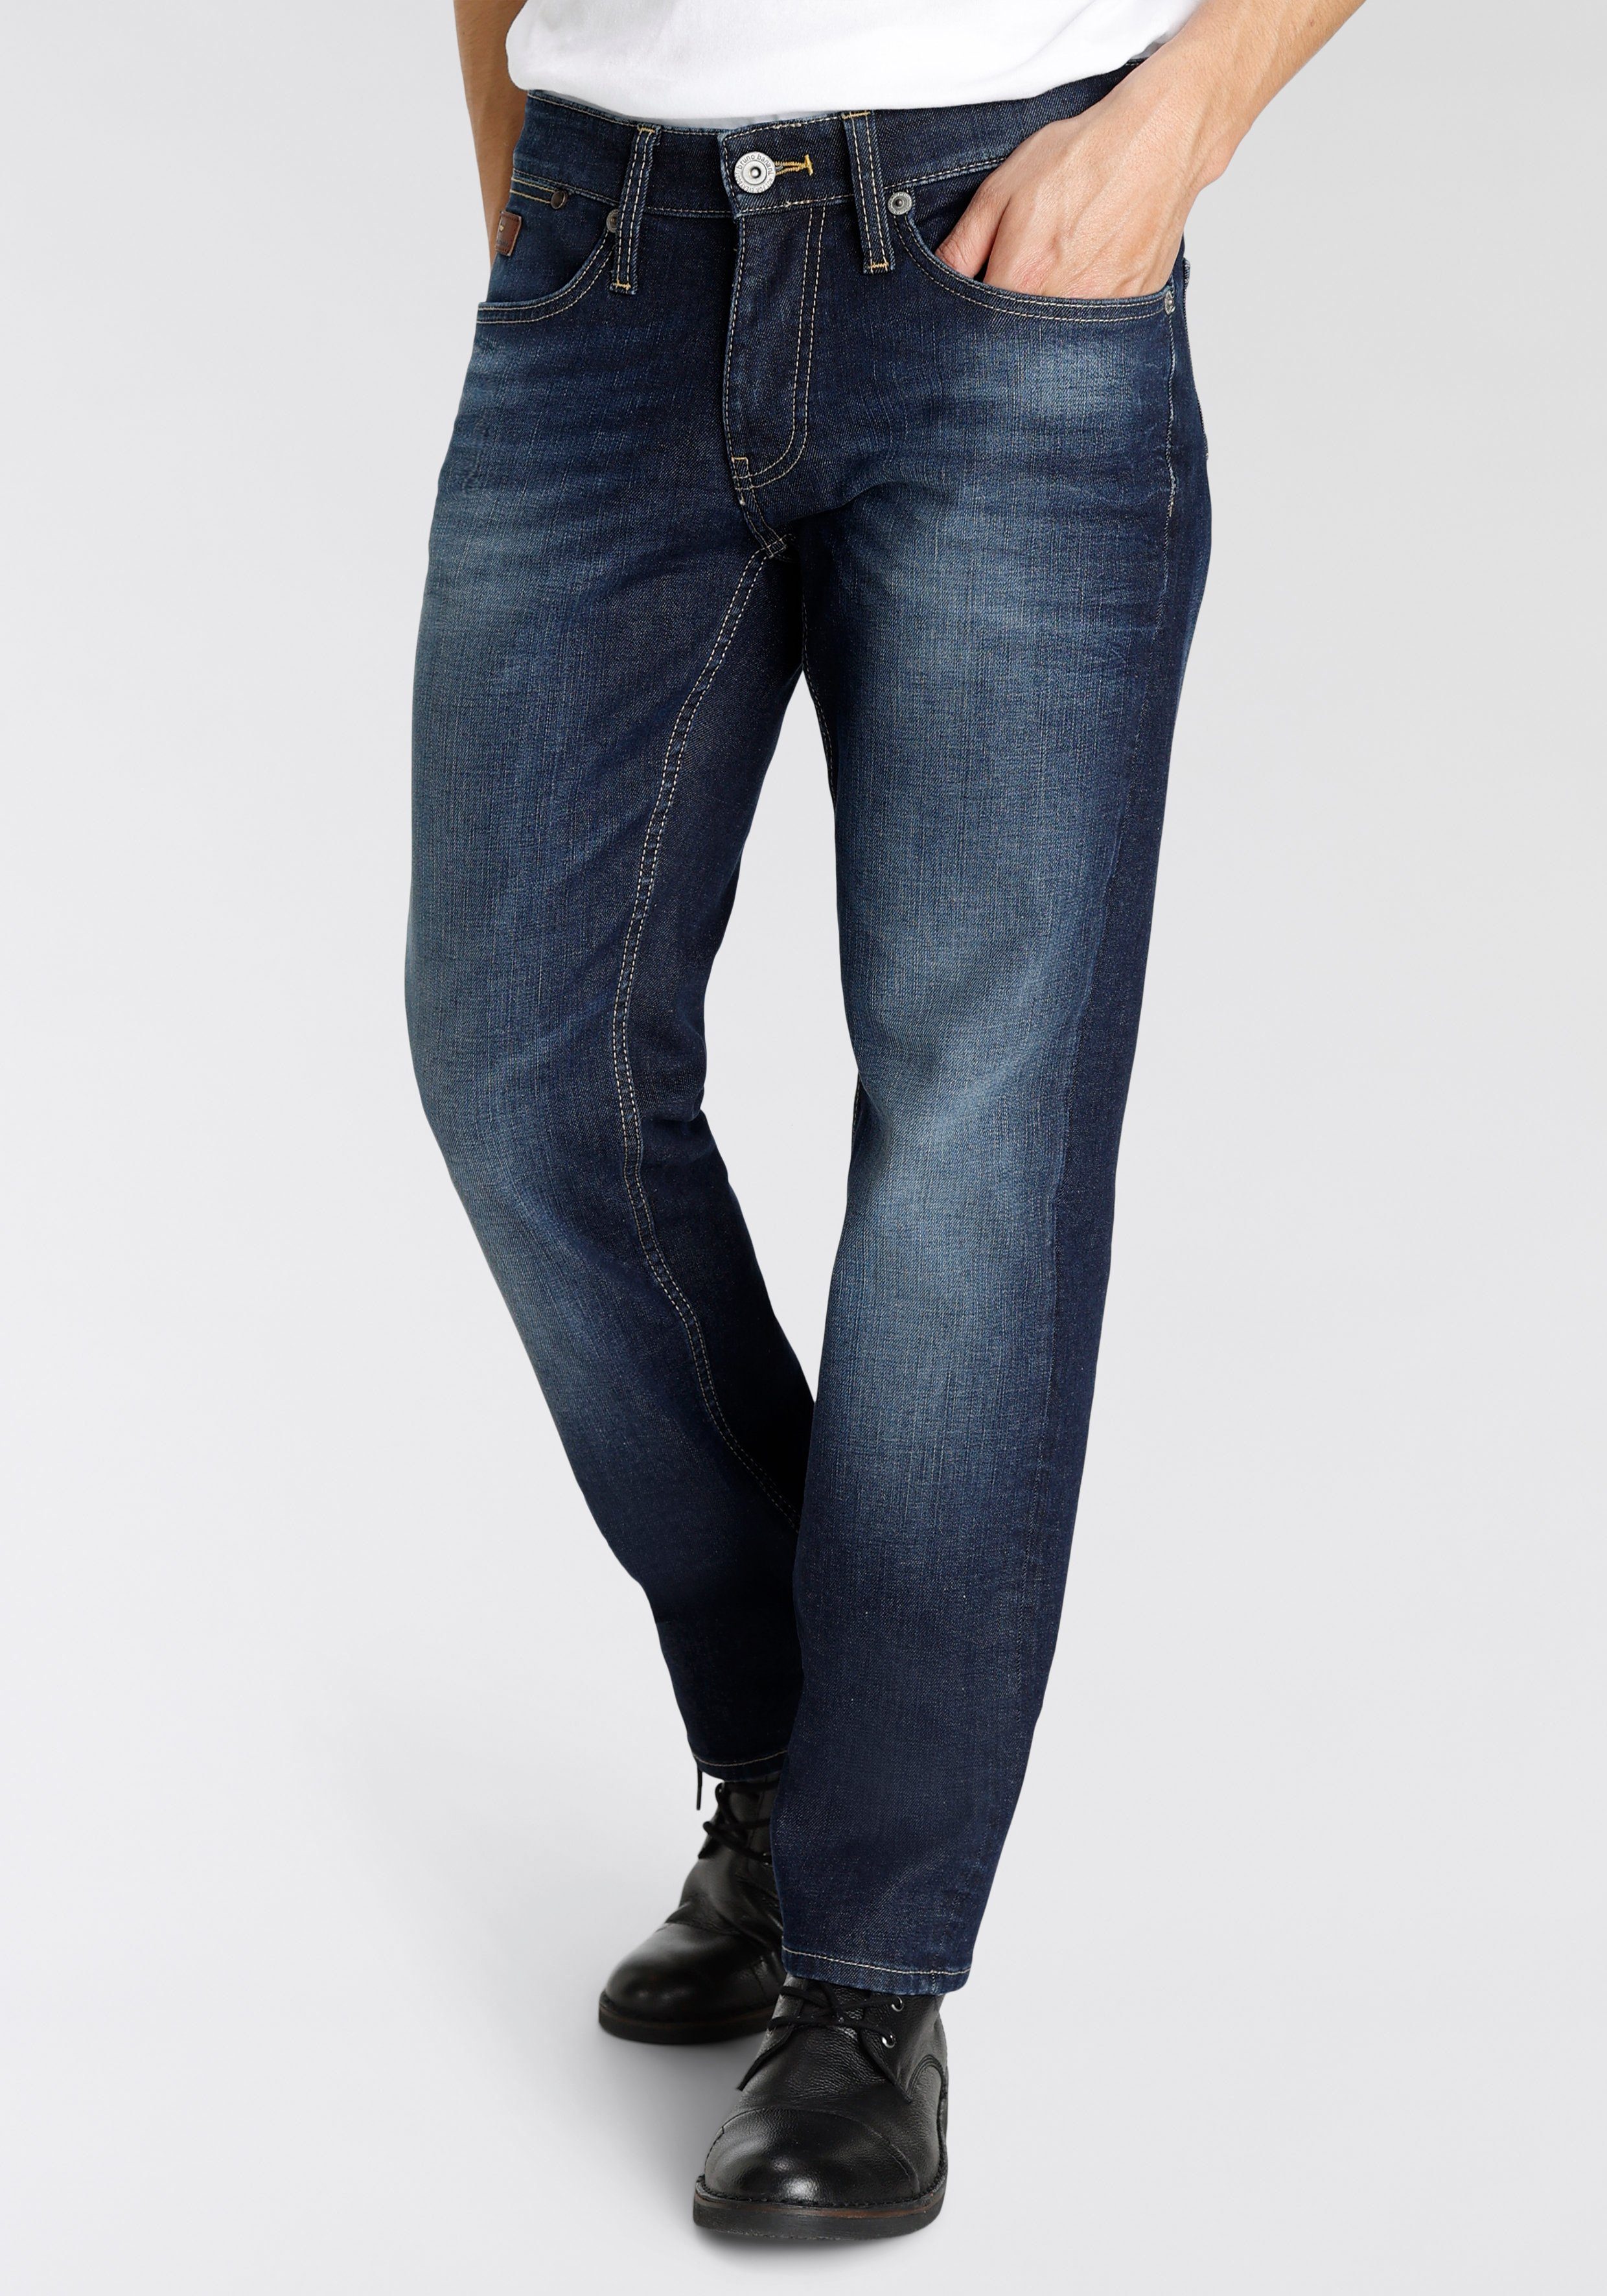 Bruno Banani 5-Pocket-Jeans Mit Lederbadges